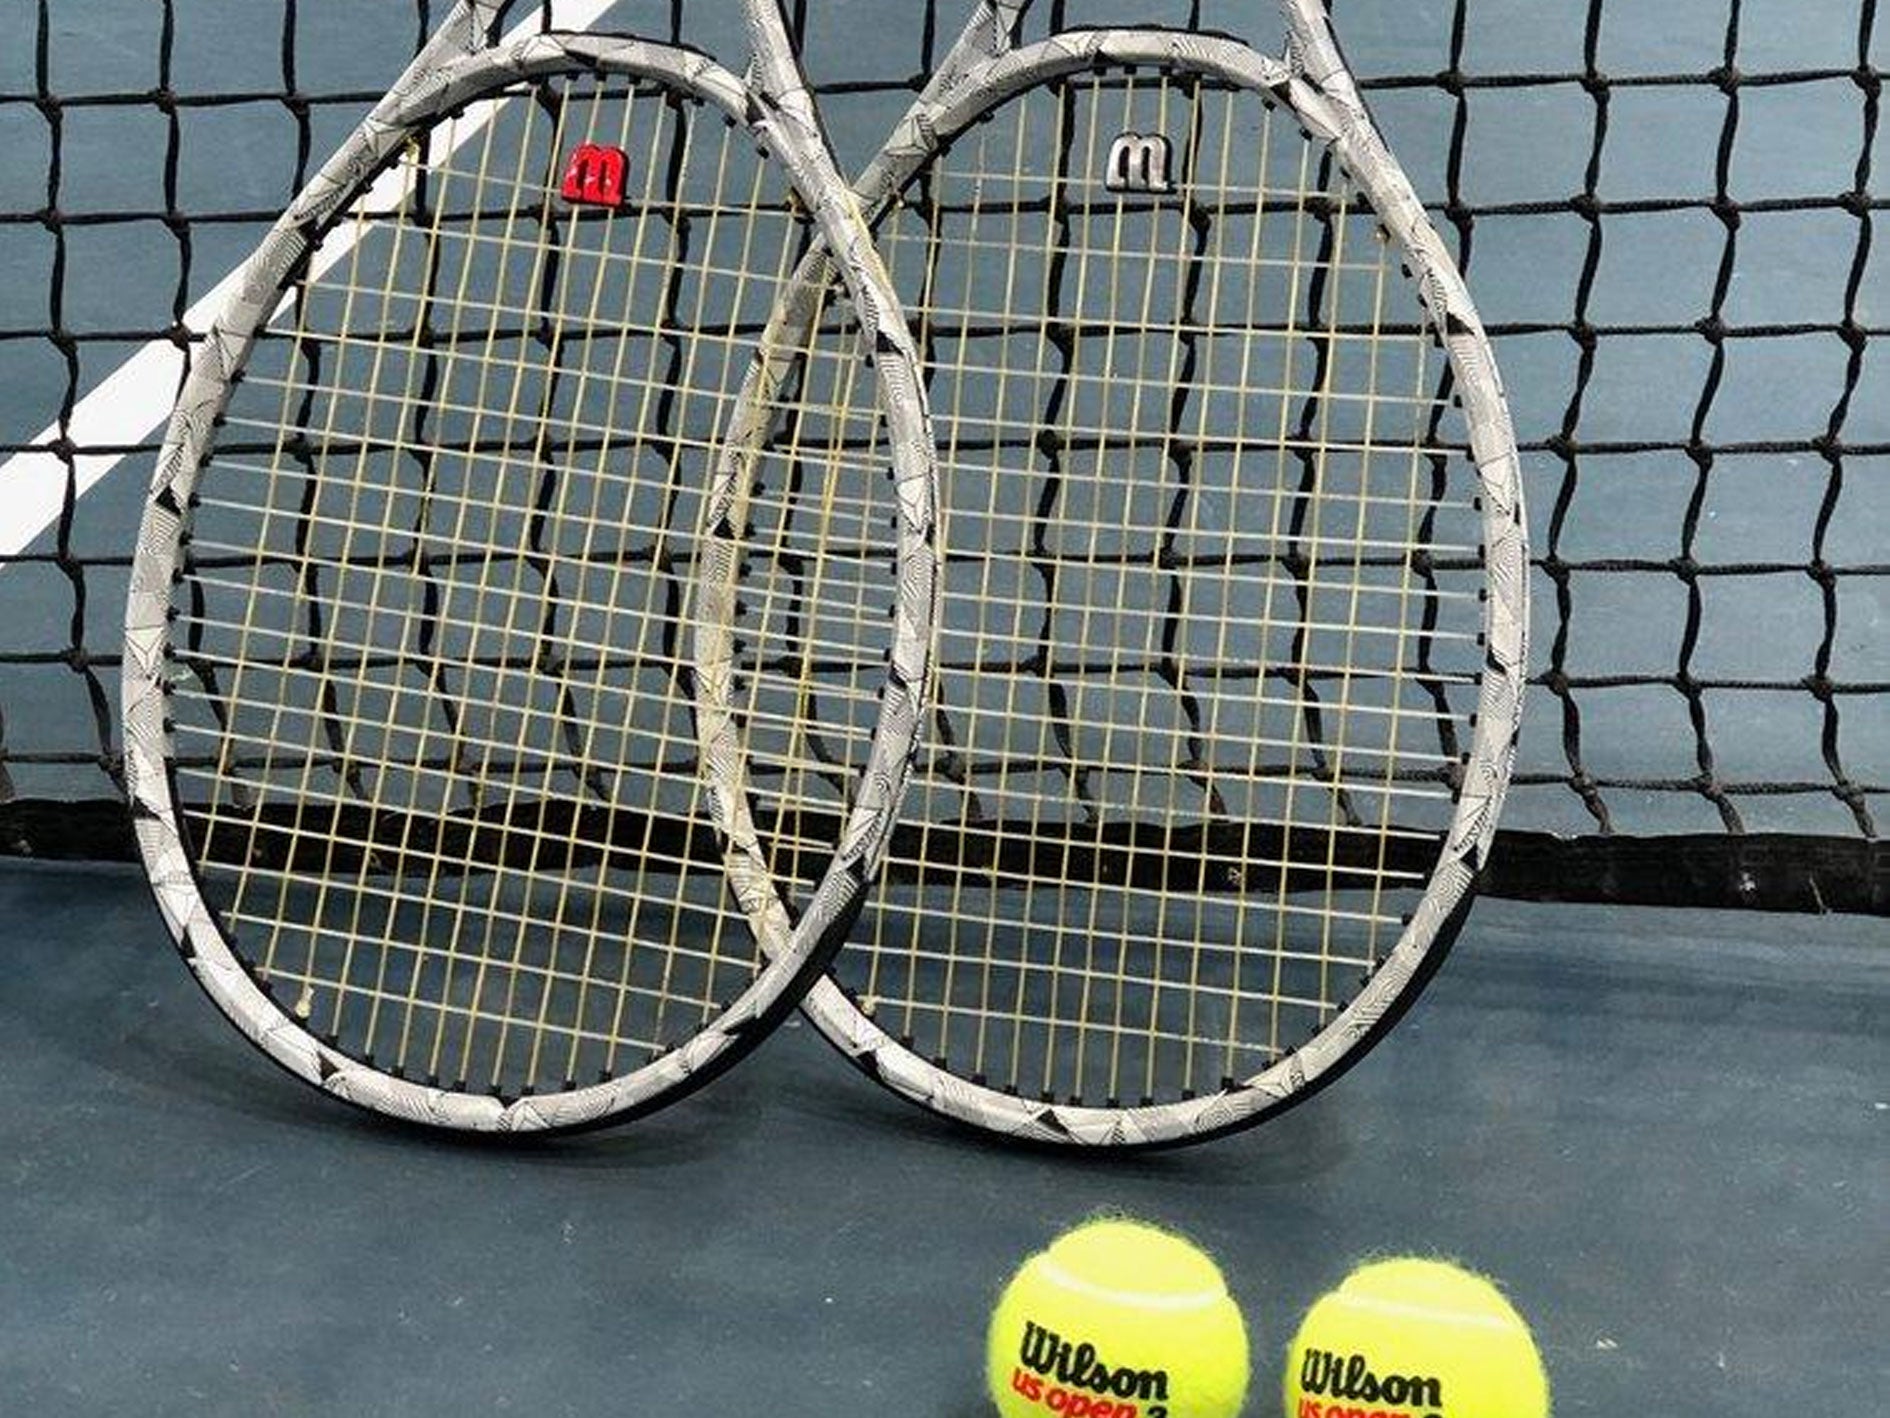 Wilson Clash – a new era of tennis rackets